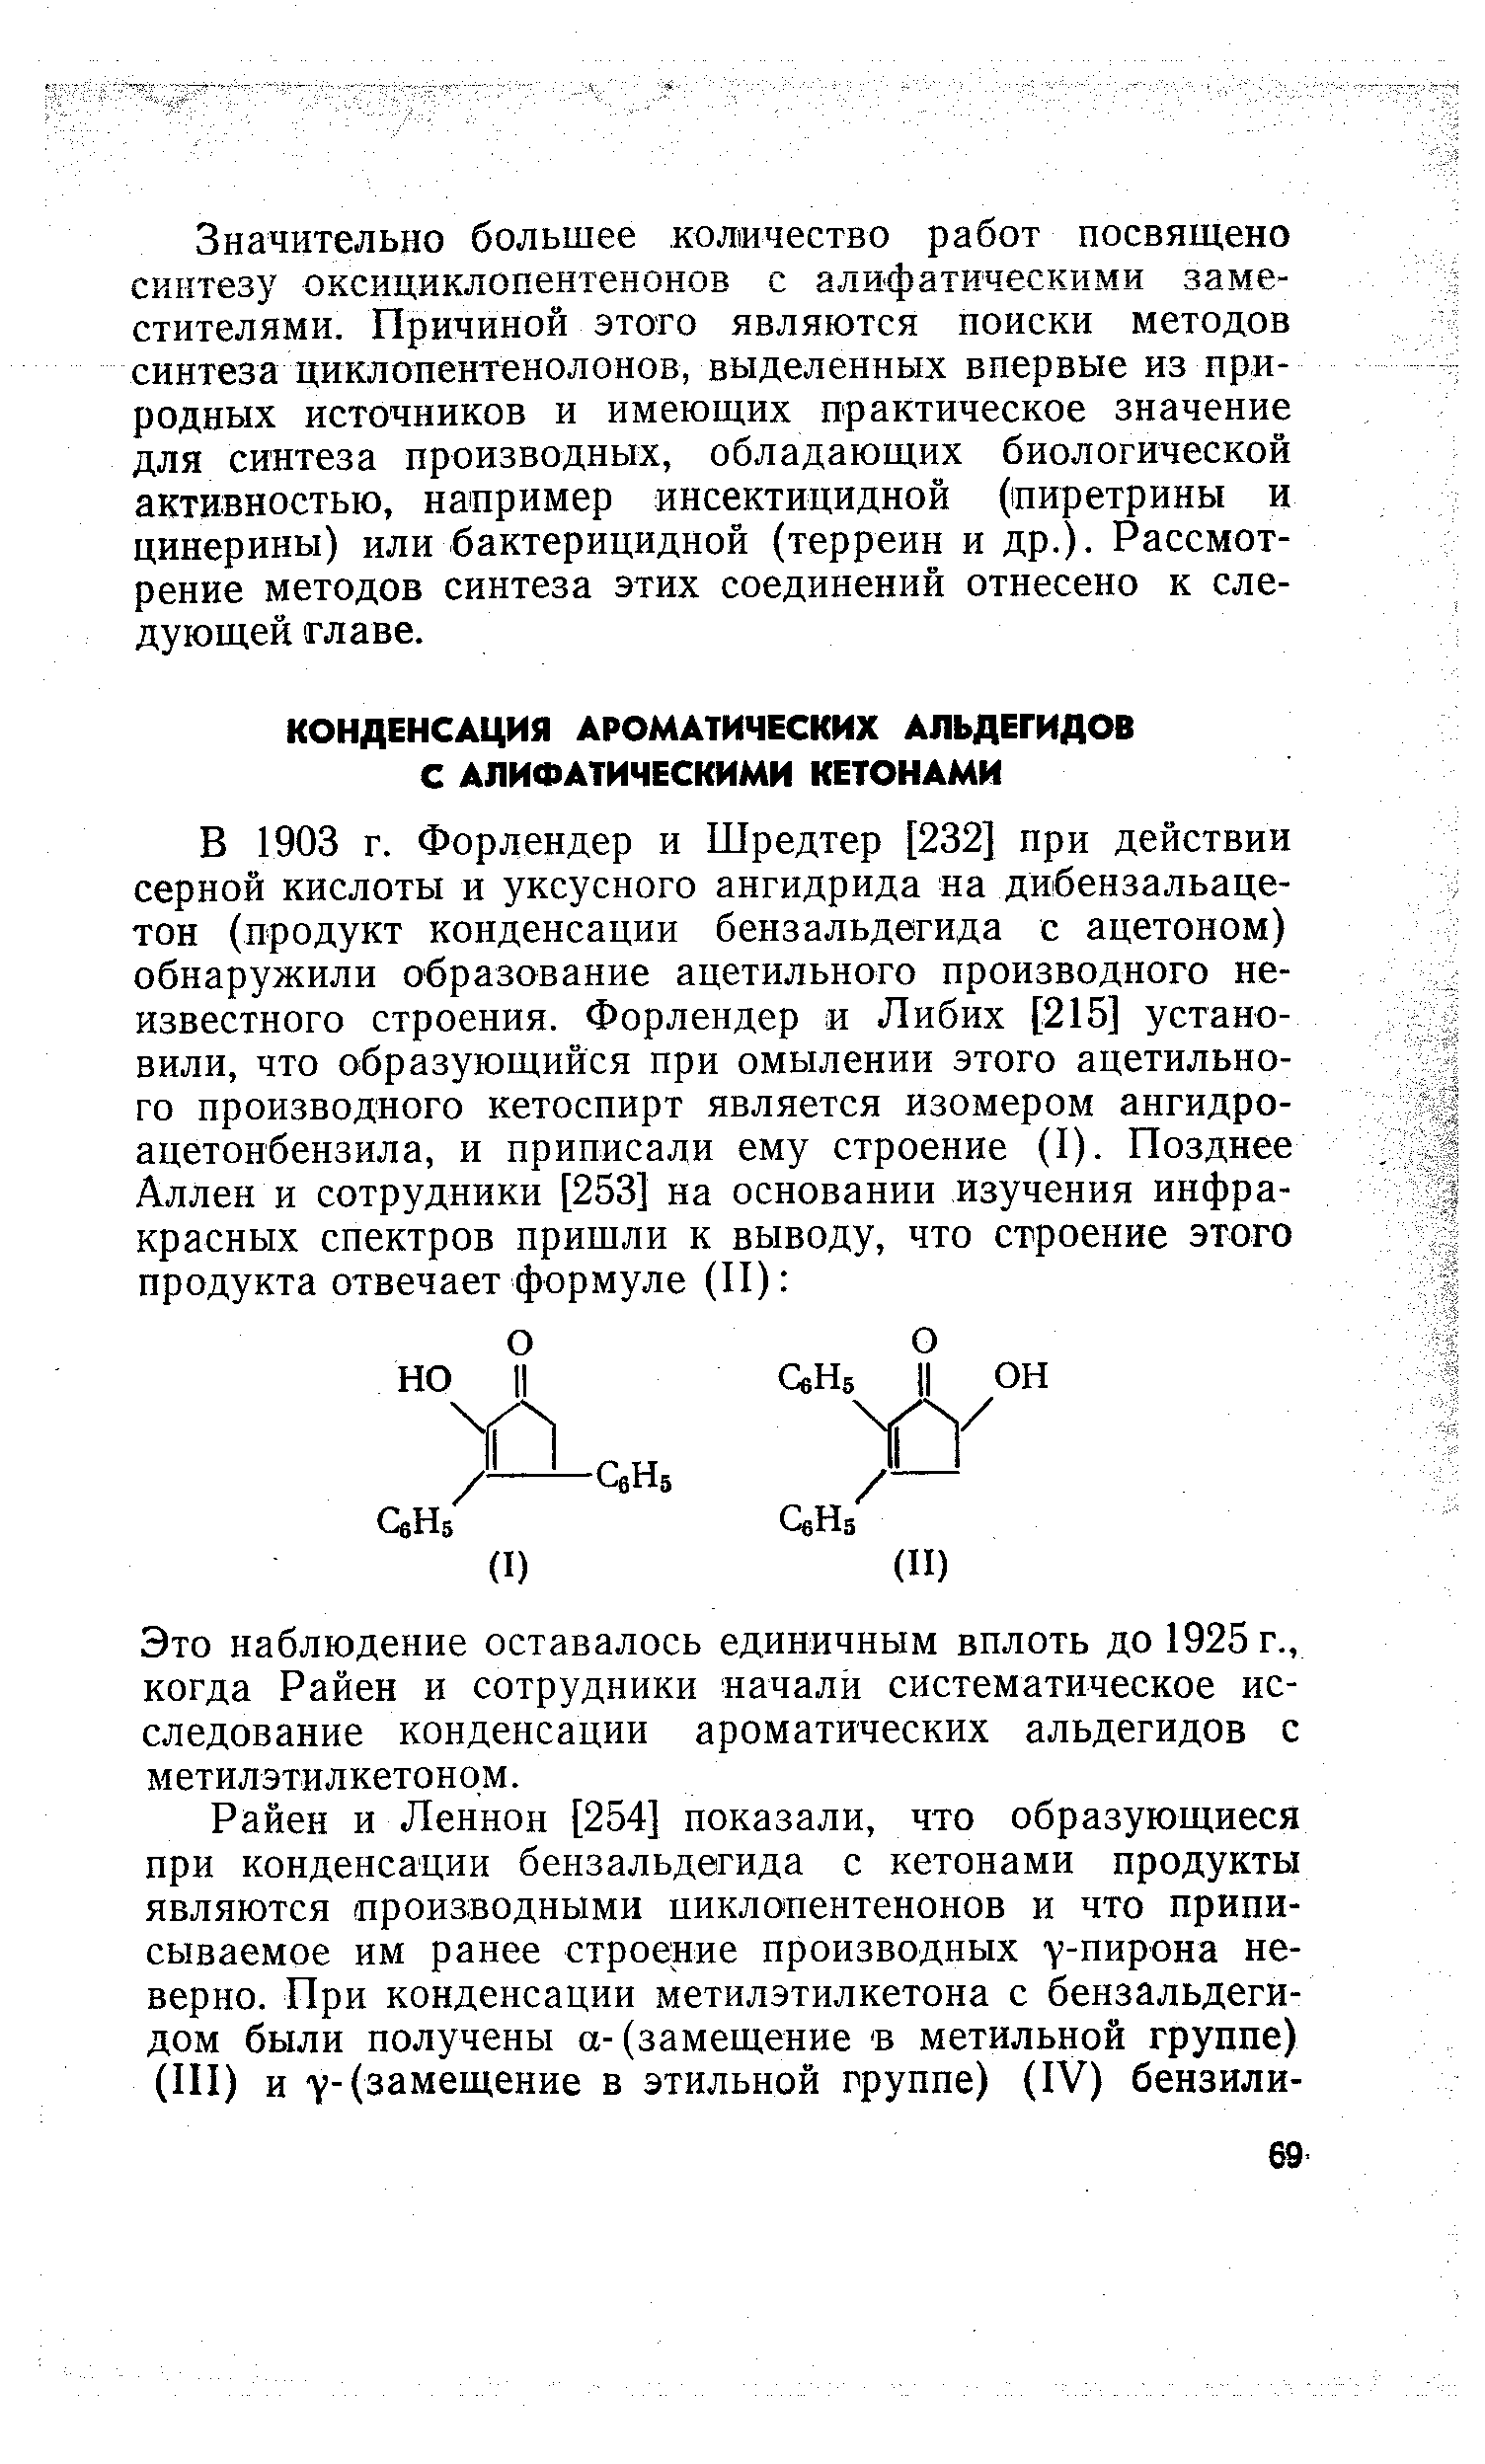 Это наблюдение оставалось единичным вплоть до 1925 г., когда Райен и сотрудники начали систематическое исследование конденсации ароматических альдегидов с метилэтилкетоном.